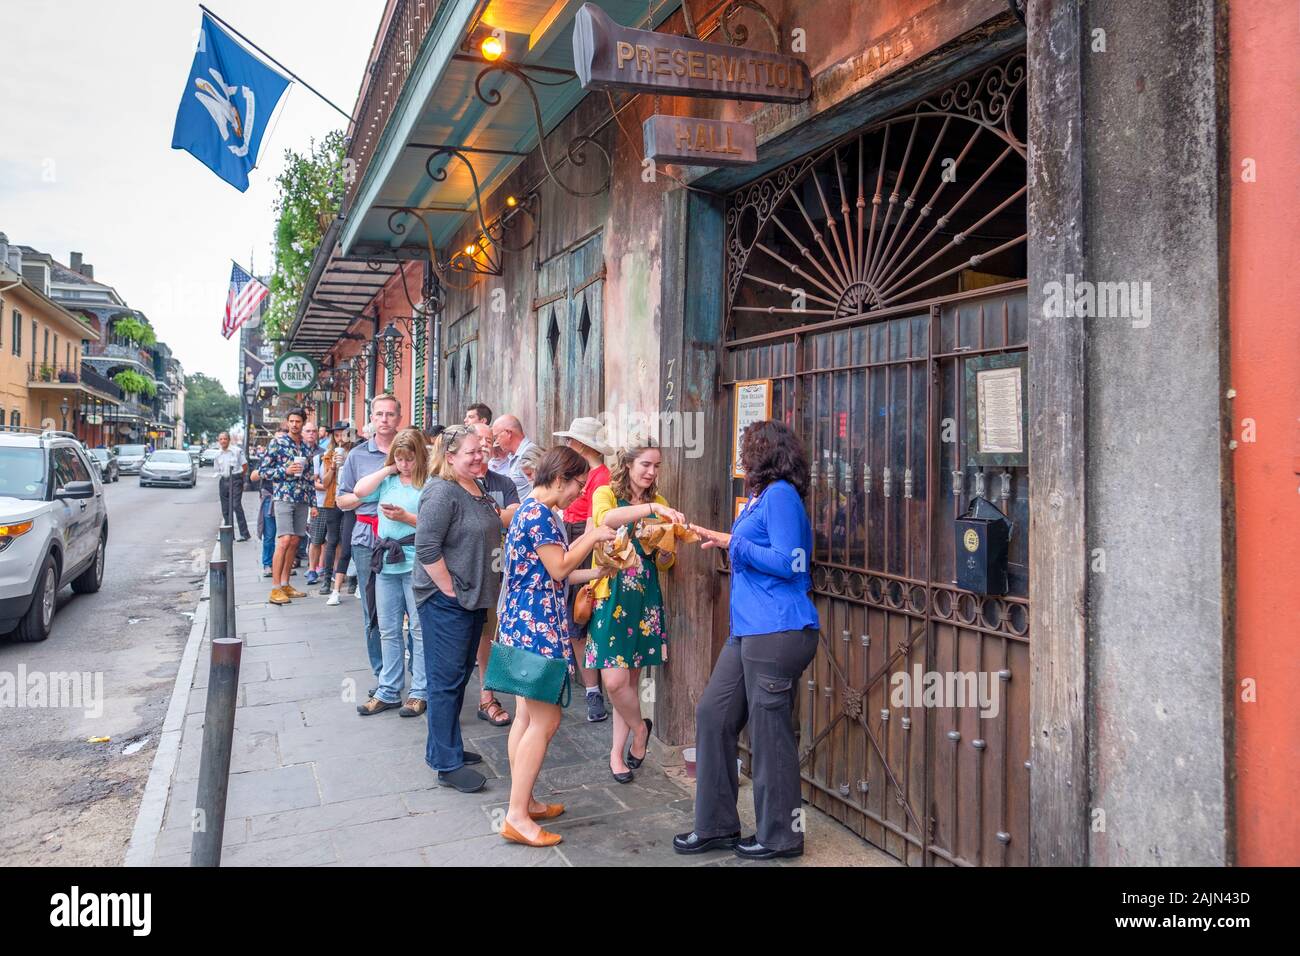 Le persone in attesa in linea fuori Preservation Hall jazz music venue, New Orleans, Louisiana, Stati Uniti d'America Foto Stock